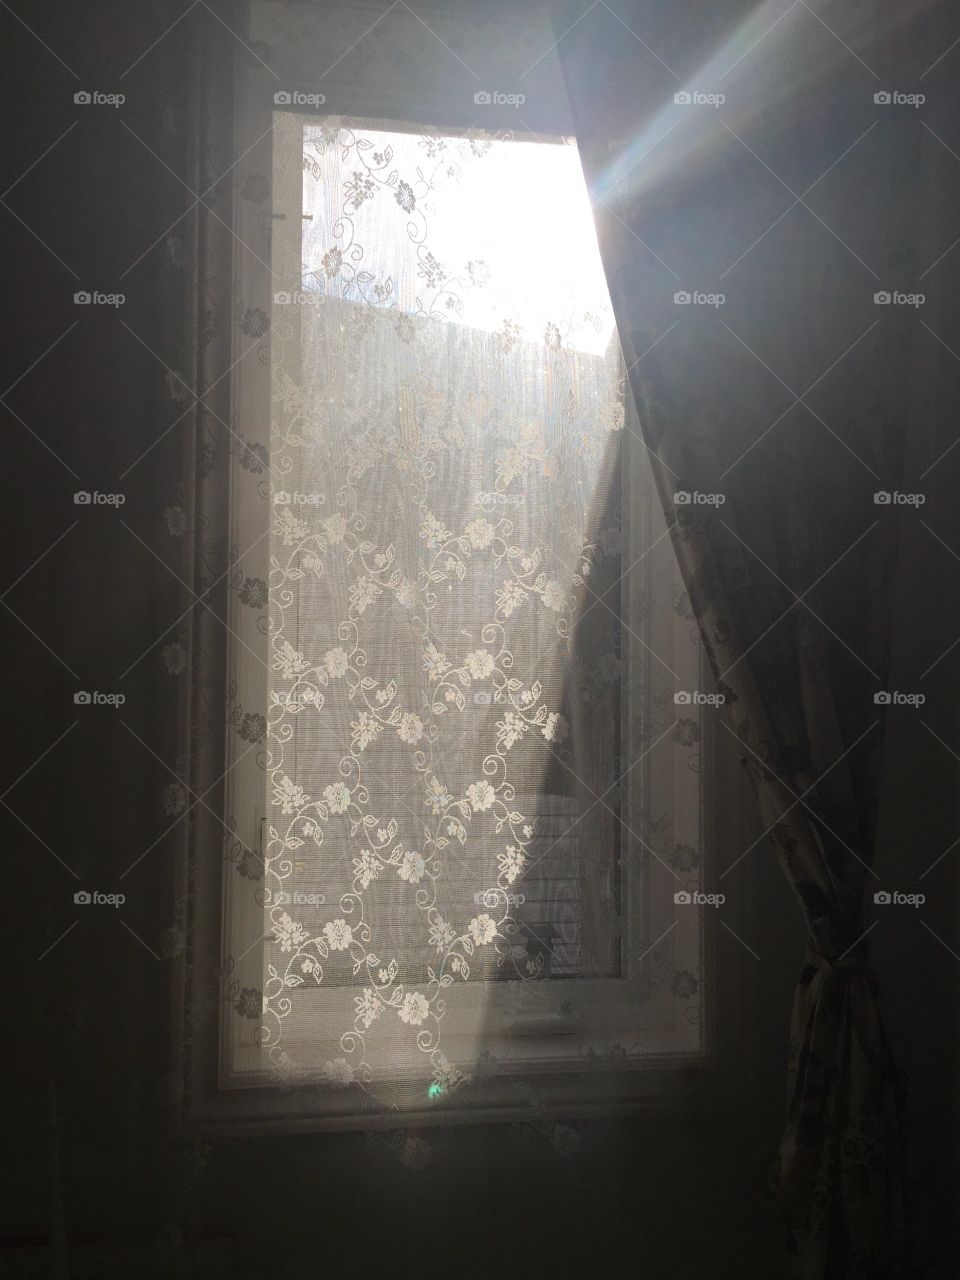 Light in the window